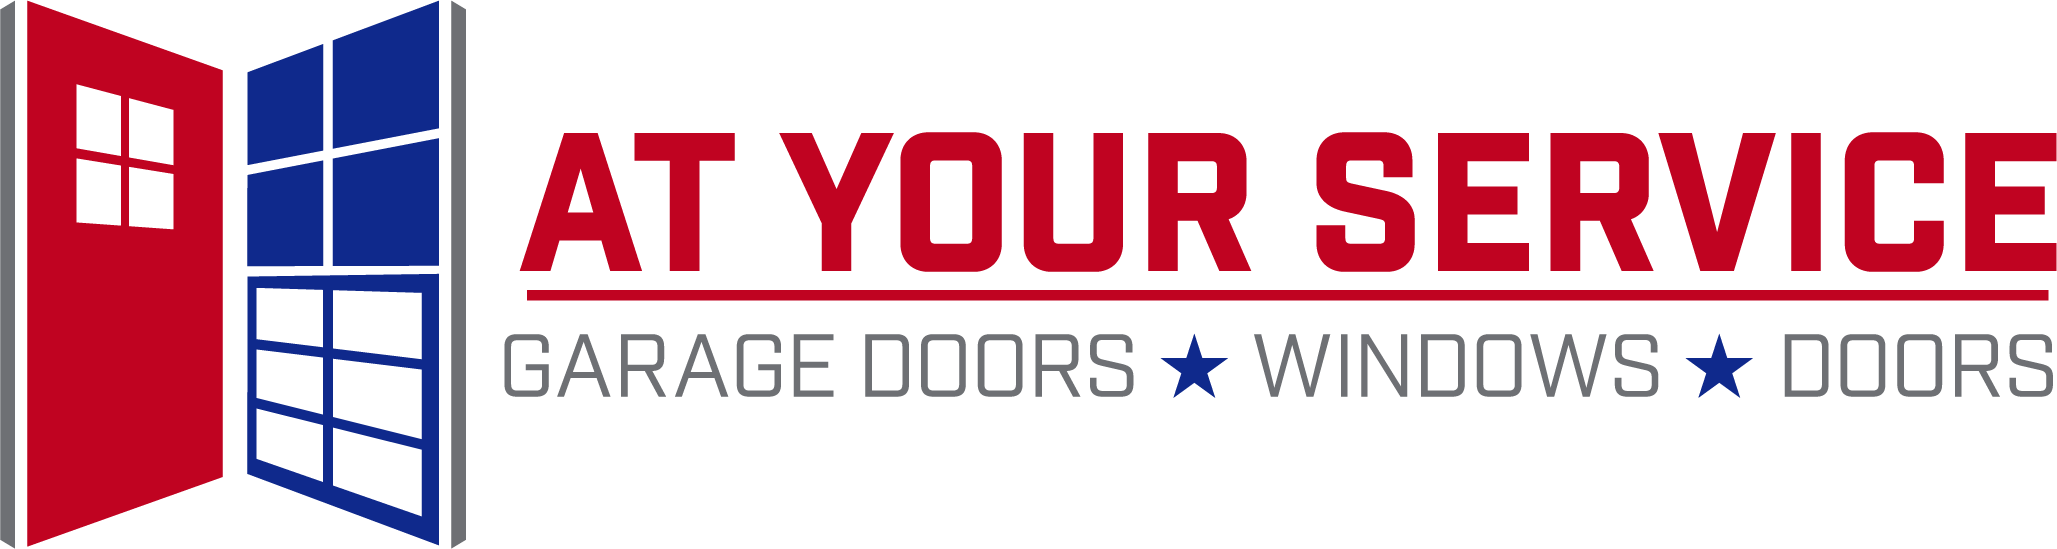 Garage Door Repair Answering Questions About Your Electric Garage Door Opener